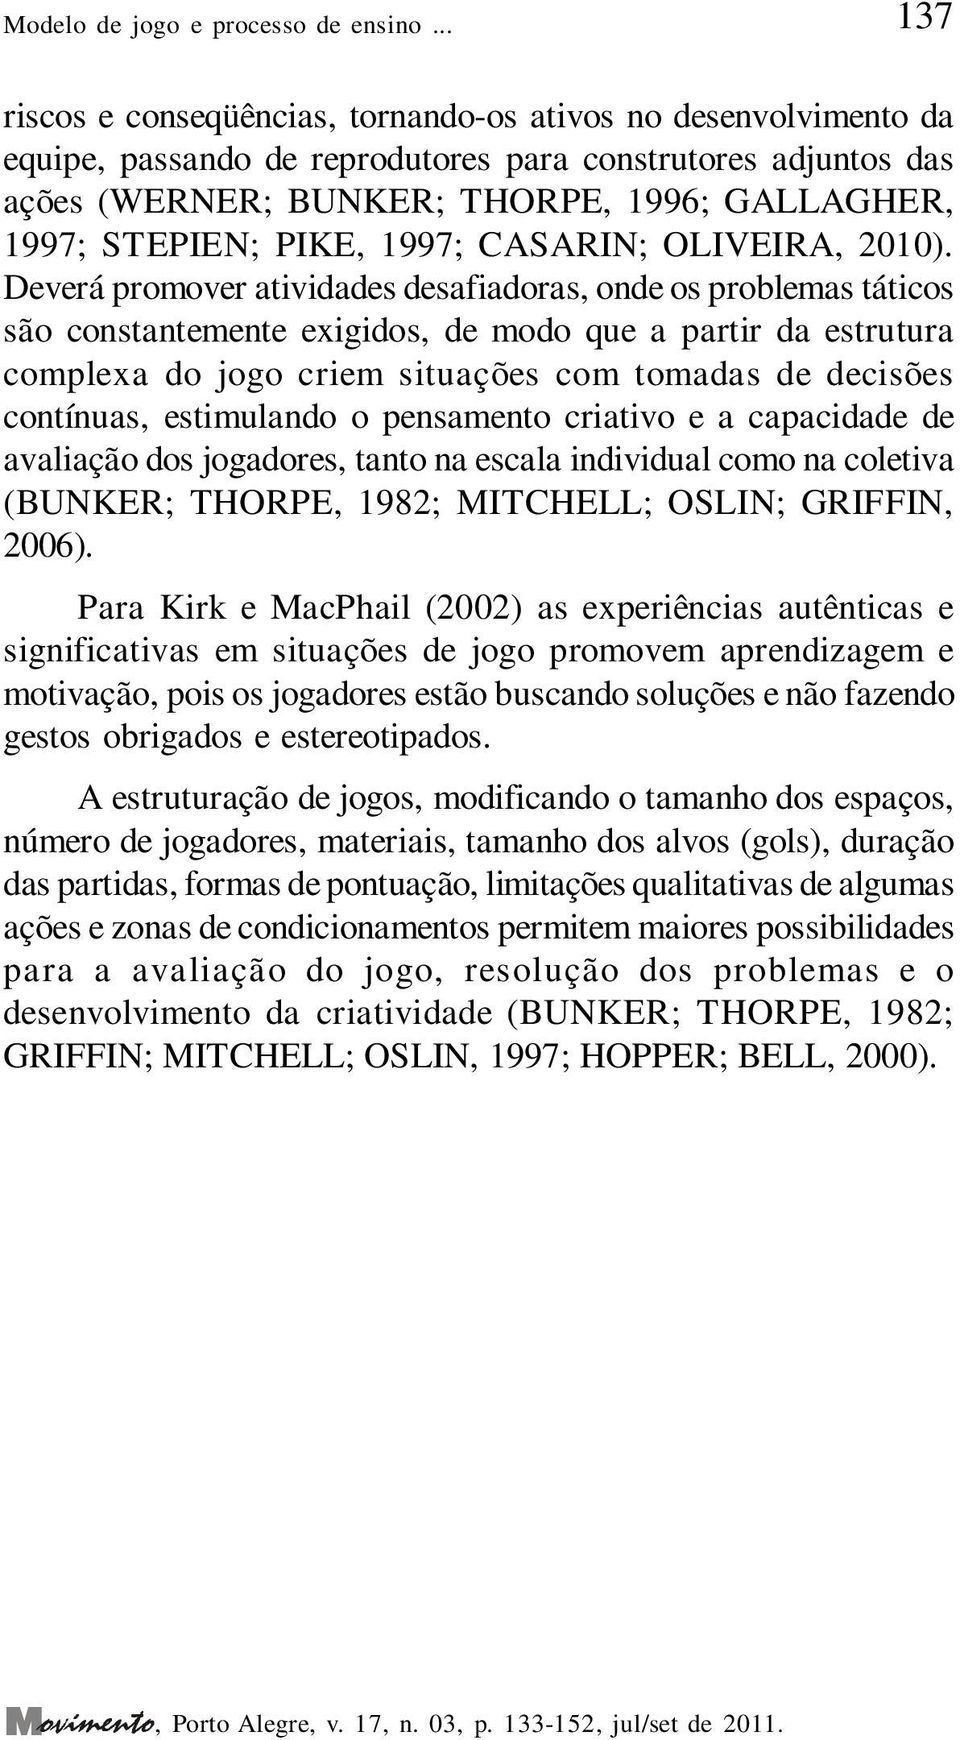 PIKE, 1997; CASARIN; OLIVEIRA, 2010).